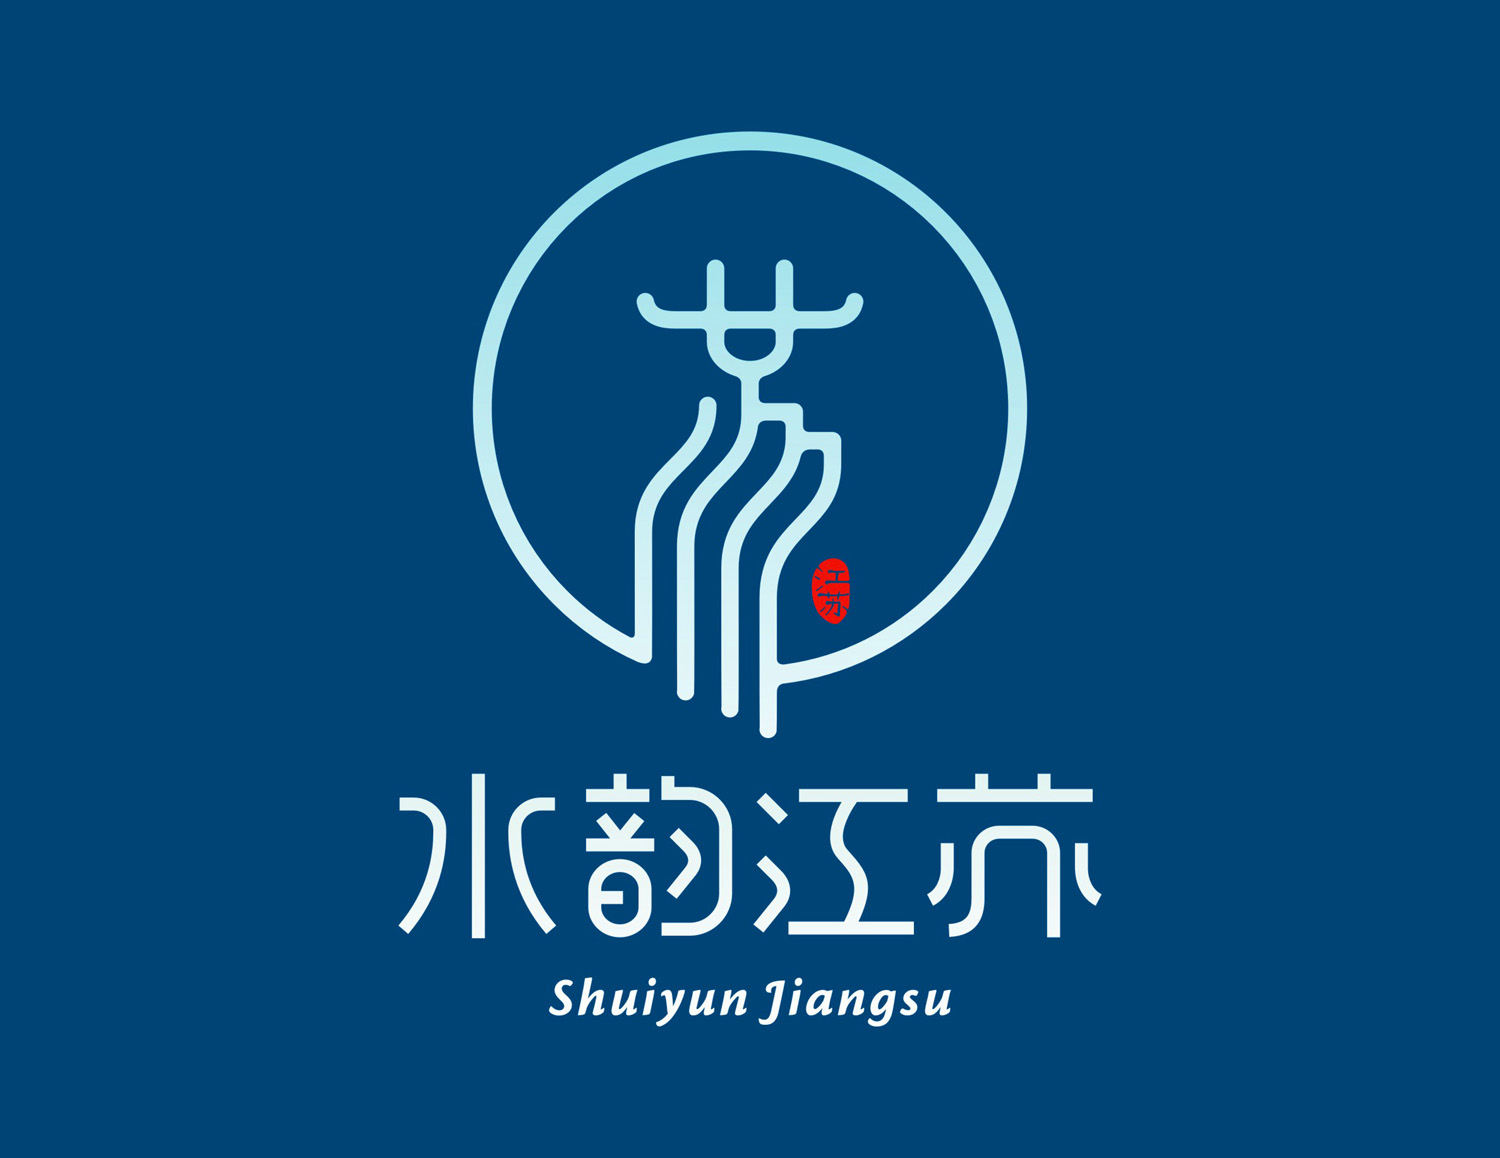 设计说明:该logo方案以江苏的城市简称汉字"苏"字为设计创意主体构型